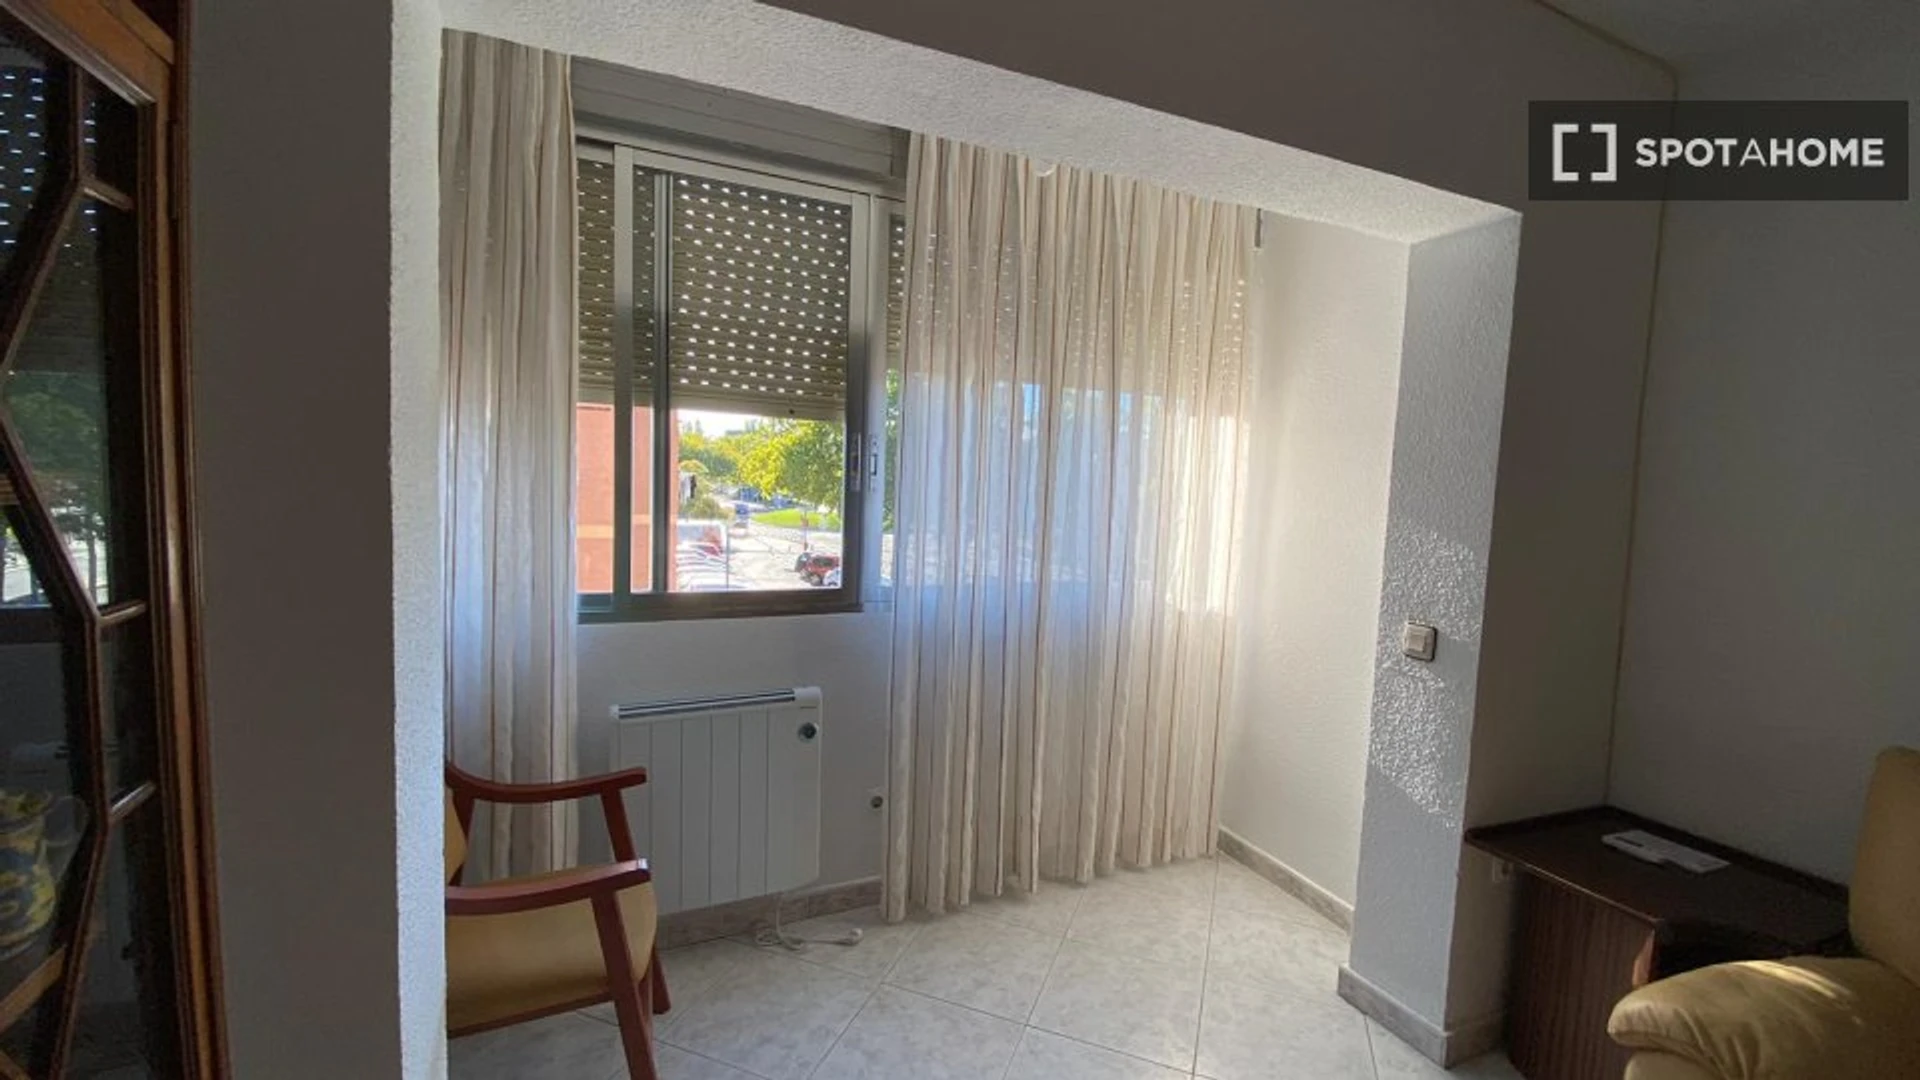 Leganés içinde aydınlık özel oda